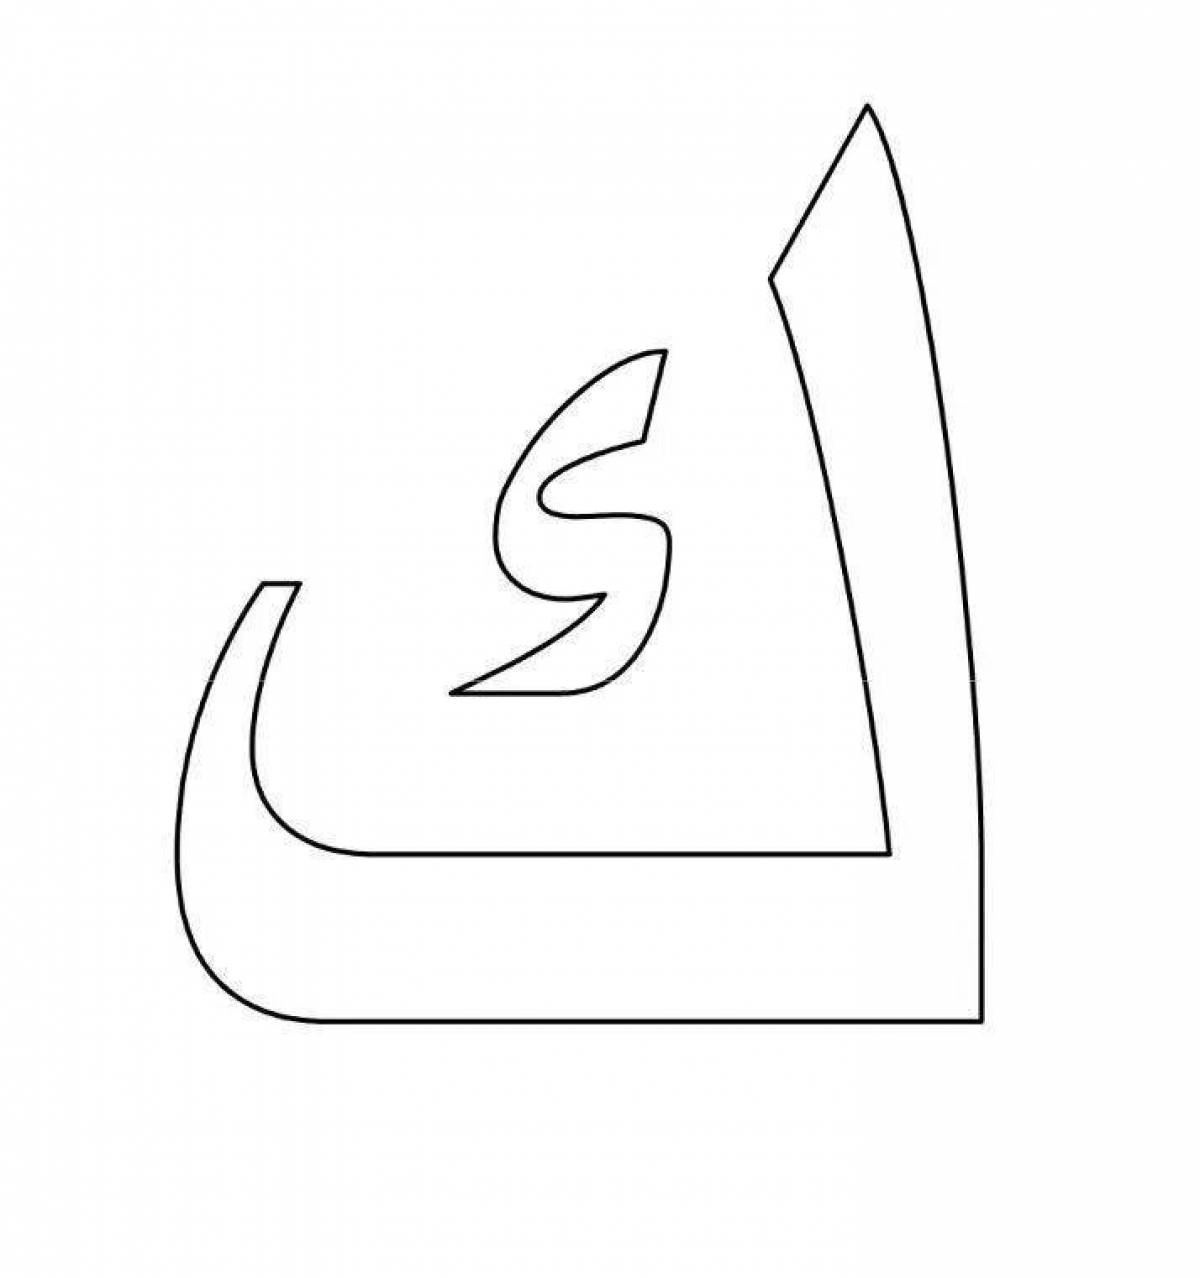 Анимированная страница раскраски с арабским алфавитом